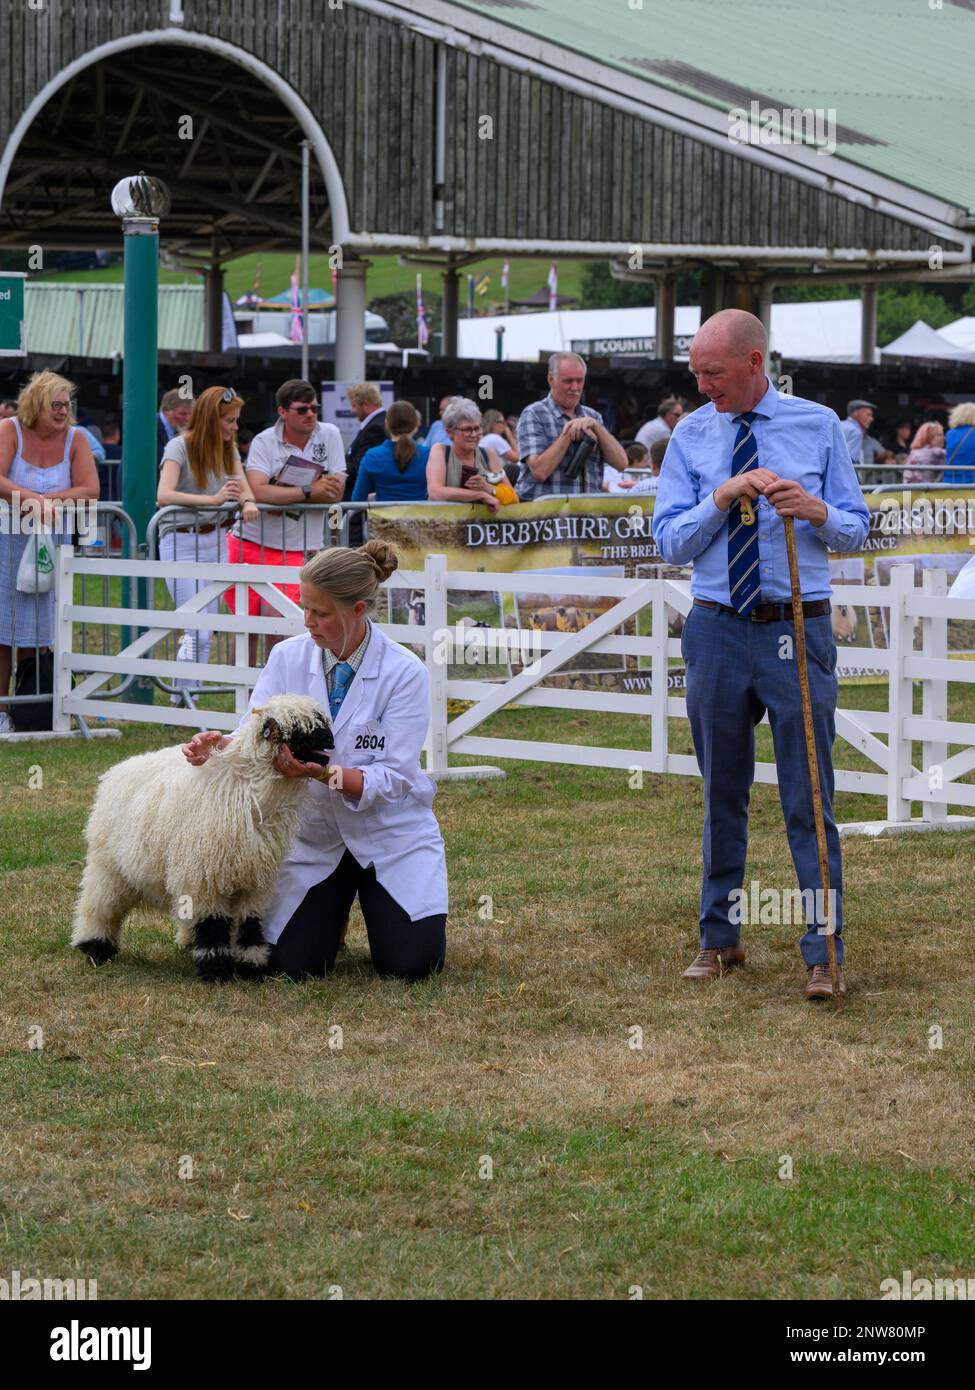 Le joli mouton noir du Valais (polaire blanche et noire à poils fins) doit être jugé par un fermier (femme) - Great Yorkshire Country Show, Harrogate, Angleterre, Royaume-Uni. Banque D'Images